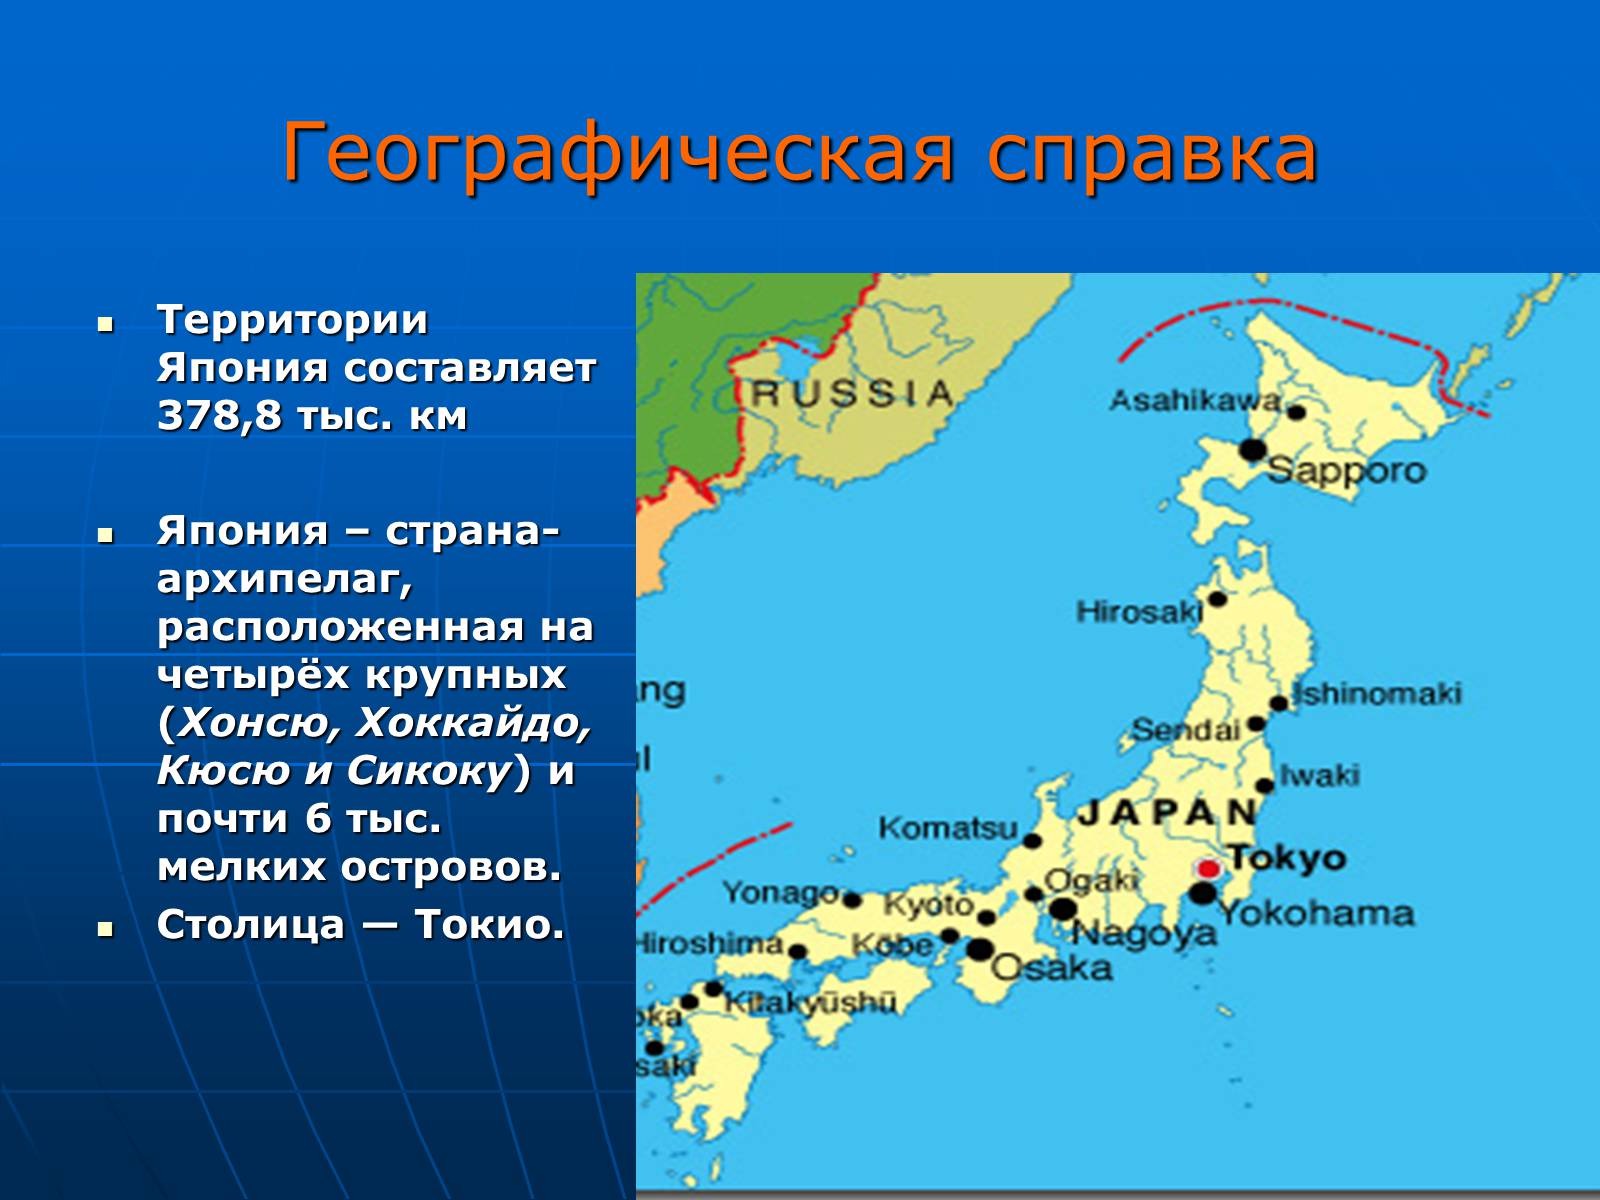 Геогр 2. Хоккайдо Хонсю Сикоку Кюсю острова. Географическое положение столица Японии. География Японии. Японский архипелаг на карте.